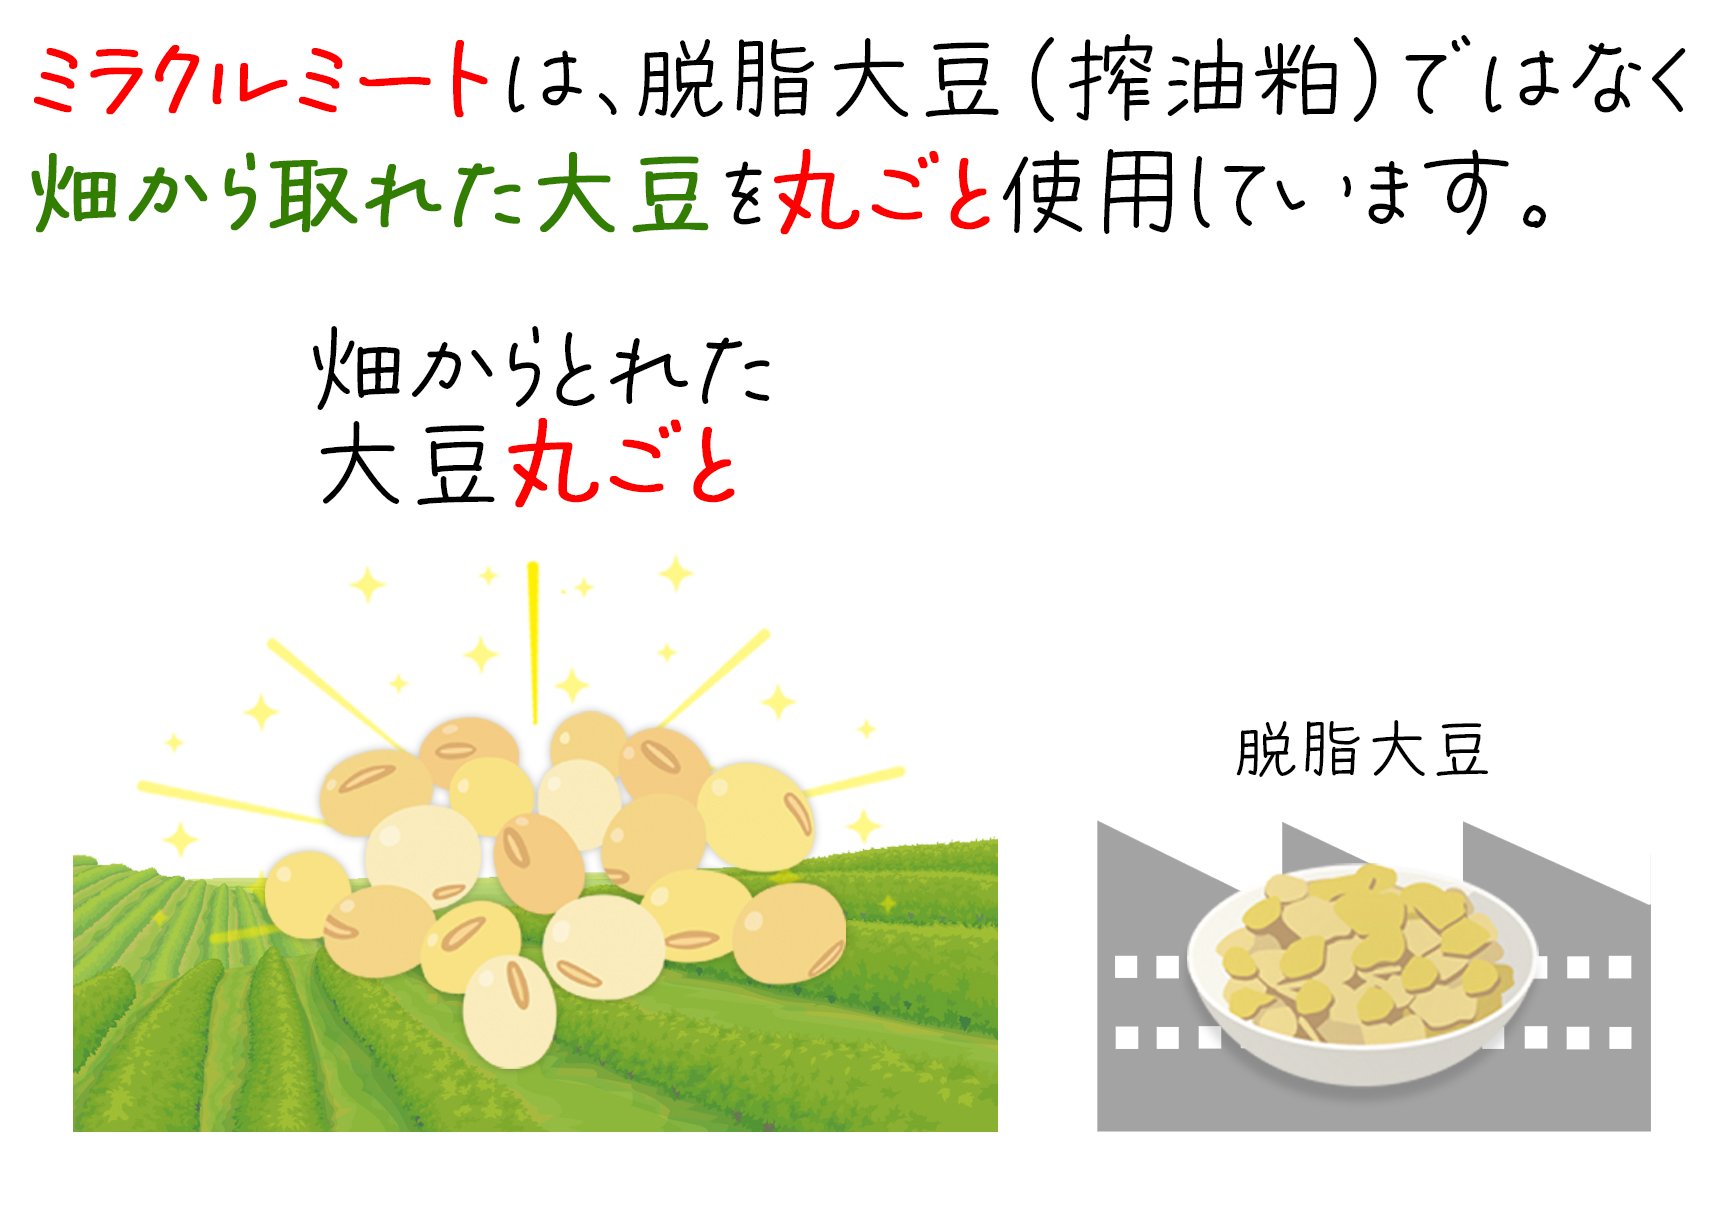 ミラクルミートは、脱脂大豆（探油粕）ではなく畑から取れた大豆を丸ごと使用しています。